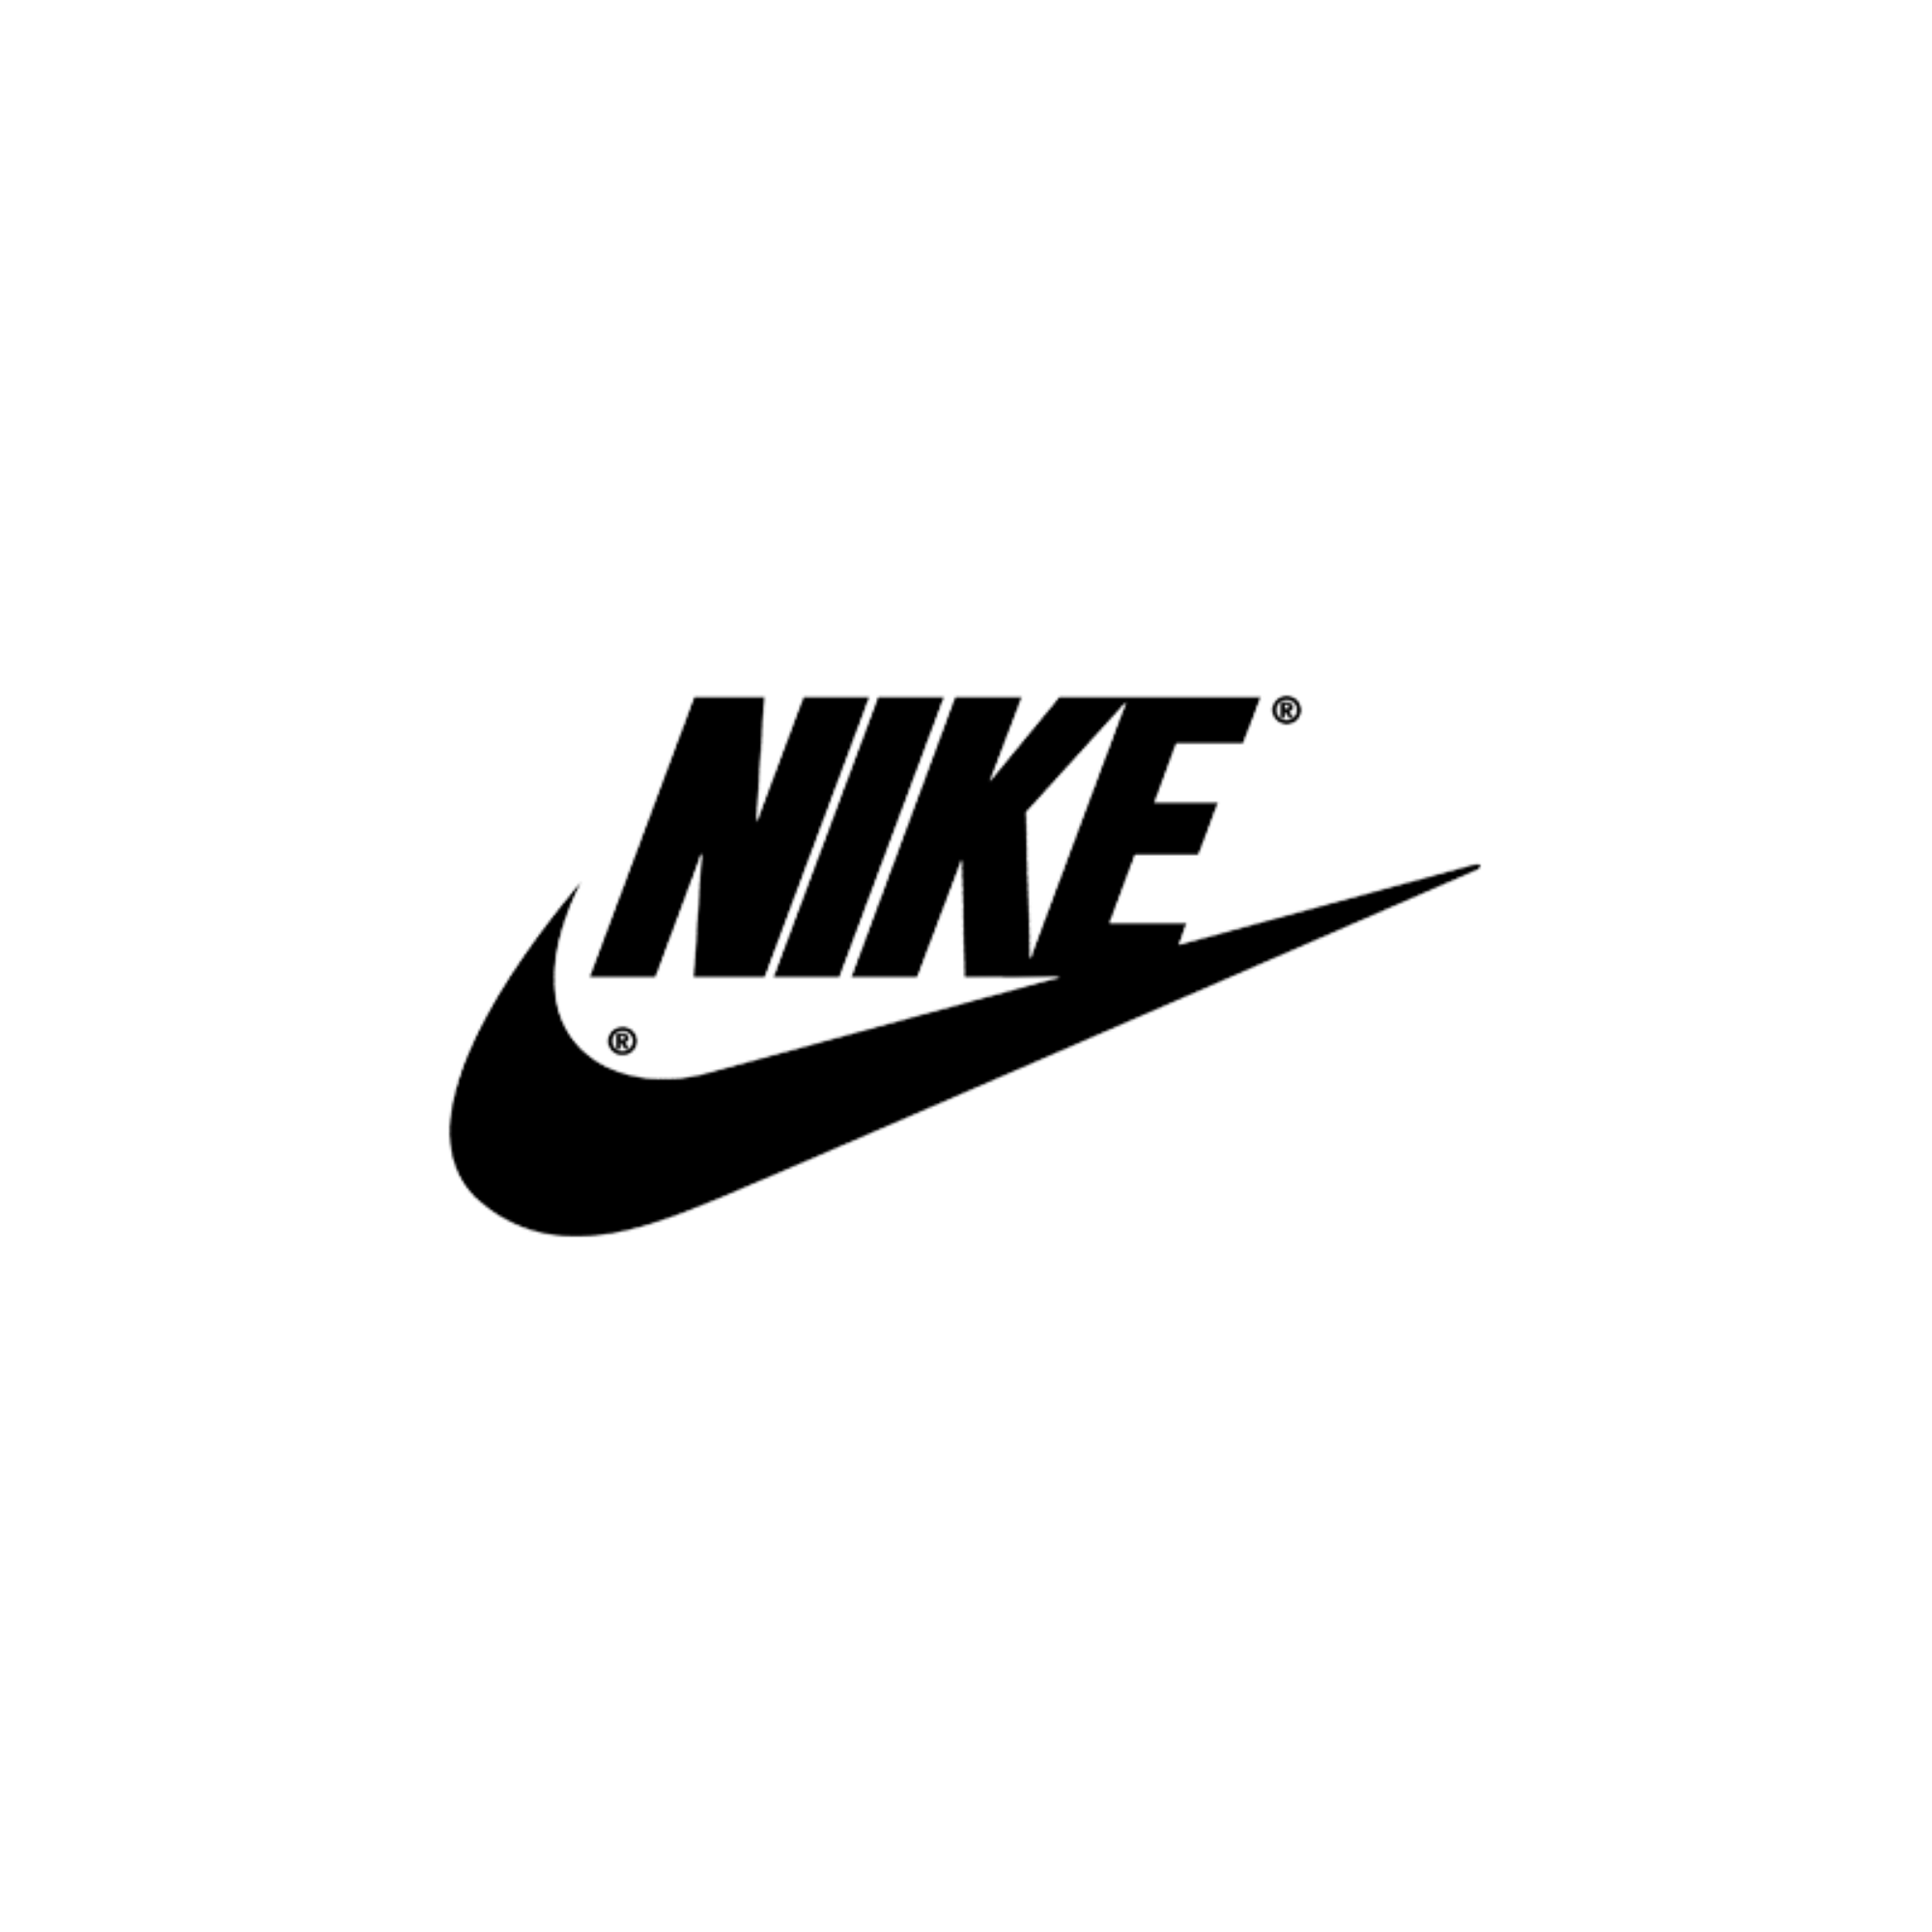 Immagine per il produttore Nike